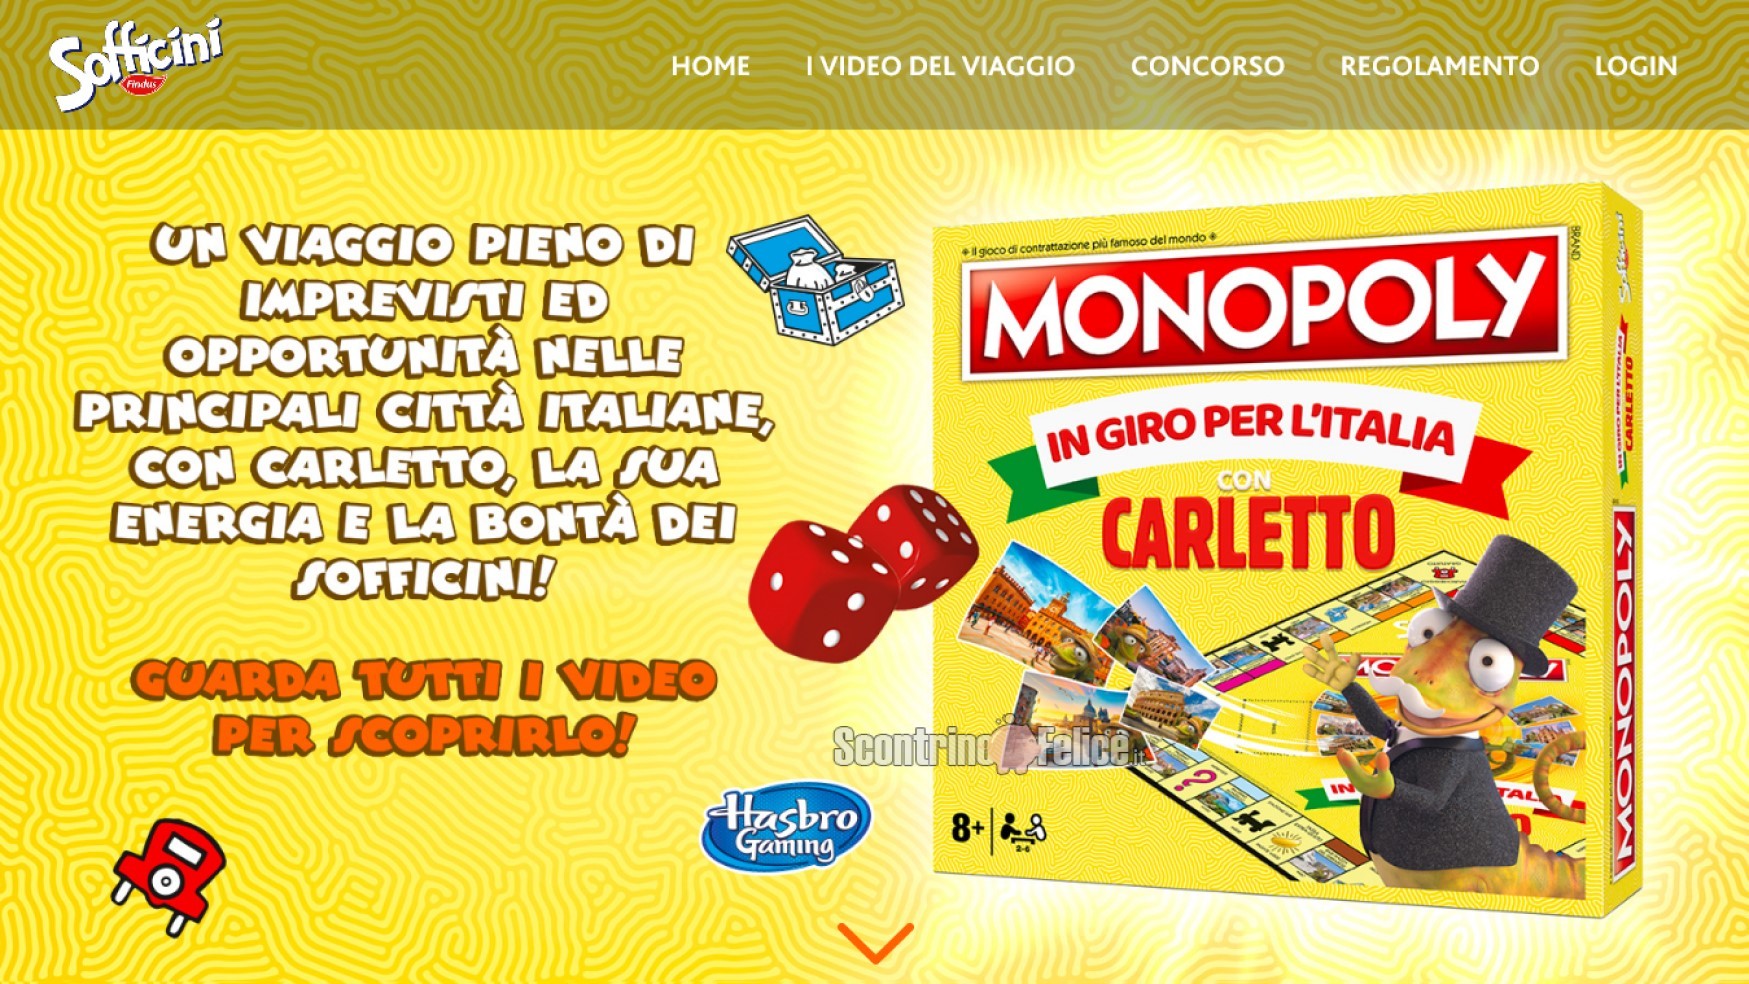 Concorso Sofficini "In giro per l’Italia con Carletto": vinci 2.000 Monopoly in Edizione Speciale